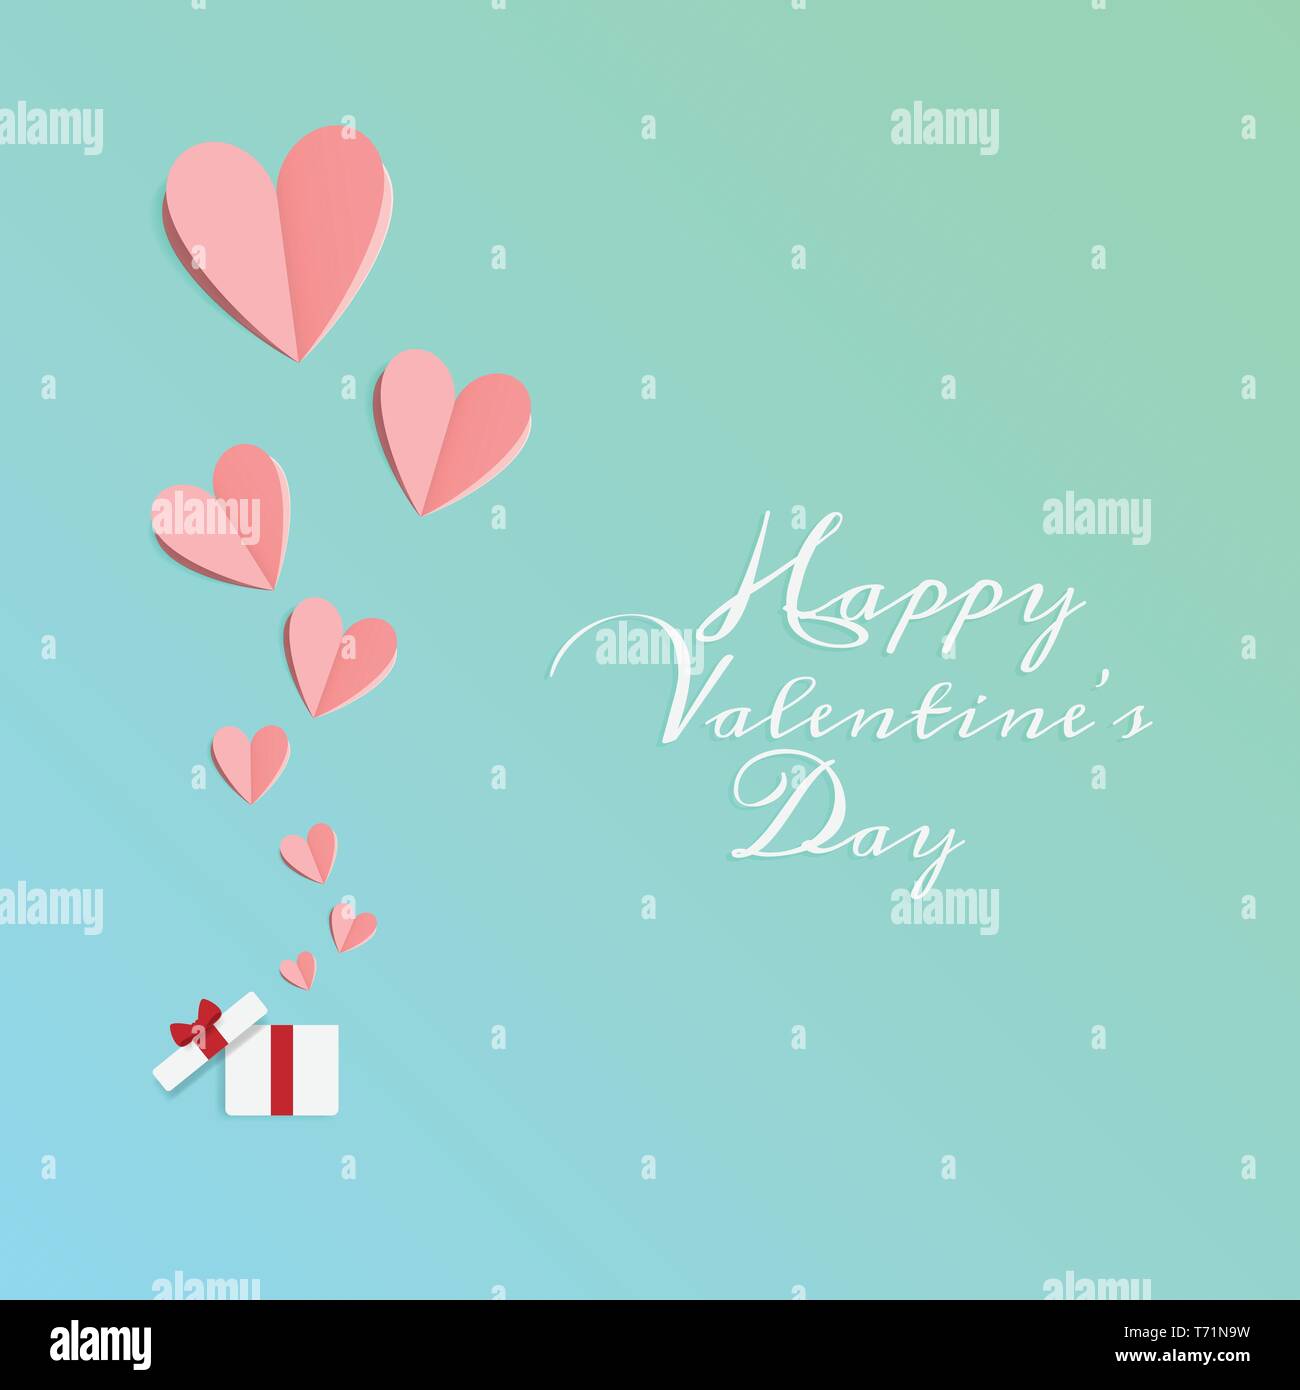 Der Vektor der Liebe und Happy Valentines Tag. origami design elemente Papier schneiden öffnen Geschenkkarton mit Herzen schweben bis zu Himmel. Papier Kunst und digitale Handwerk Stock Vektor